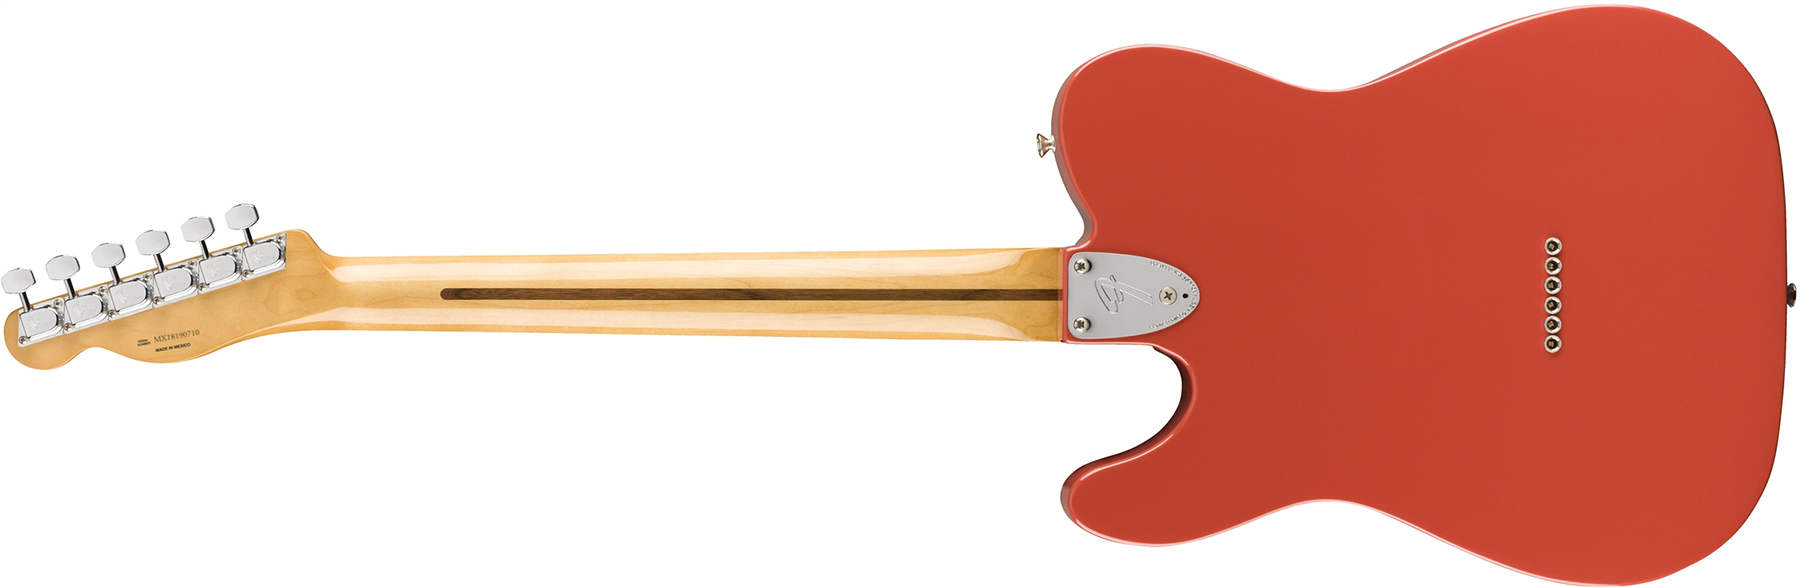 Fender Tele 70s Custom Vintera Vintage Mex Hh Pf - Fiesta Red - Guitarra eléctrica con forma de tel - Variation 1